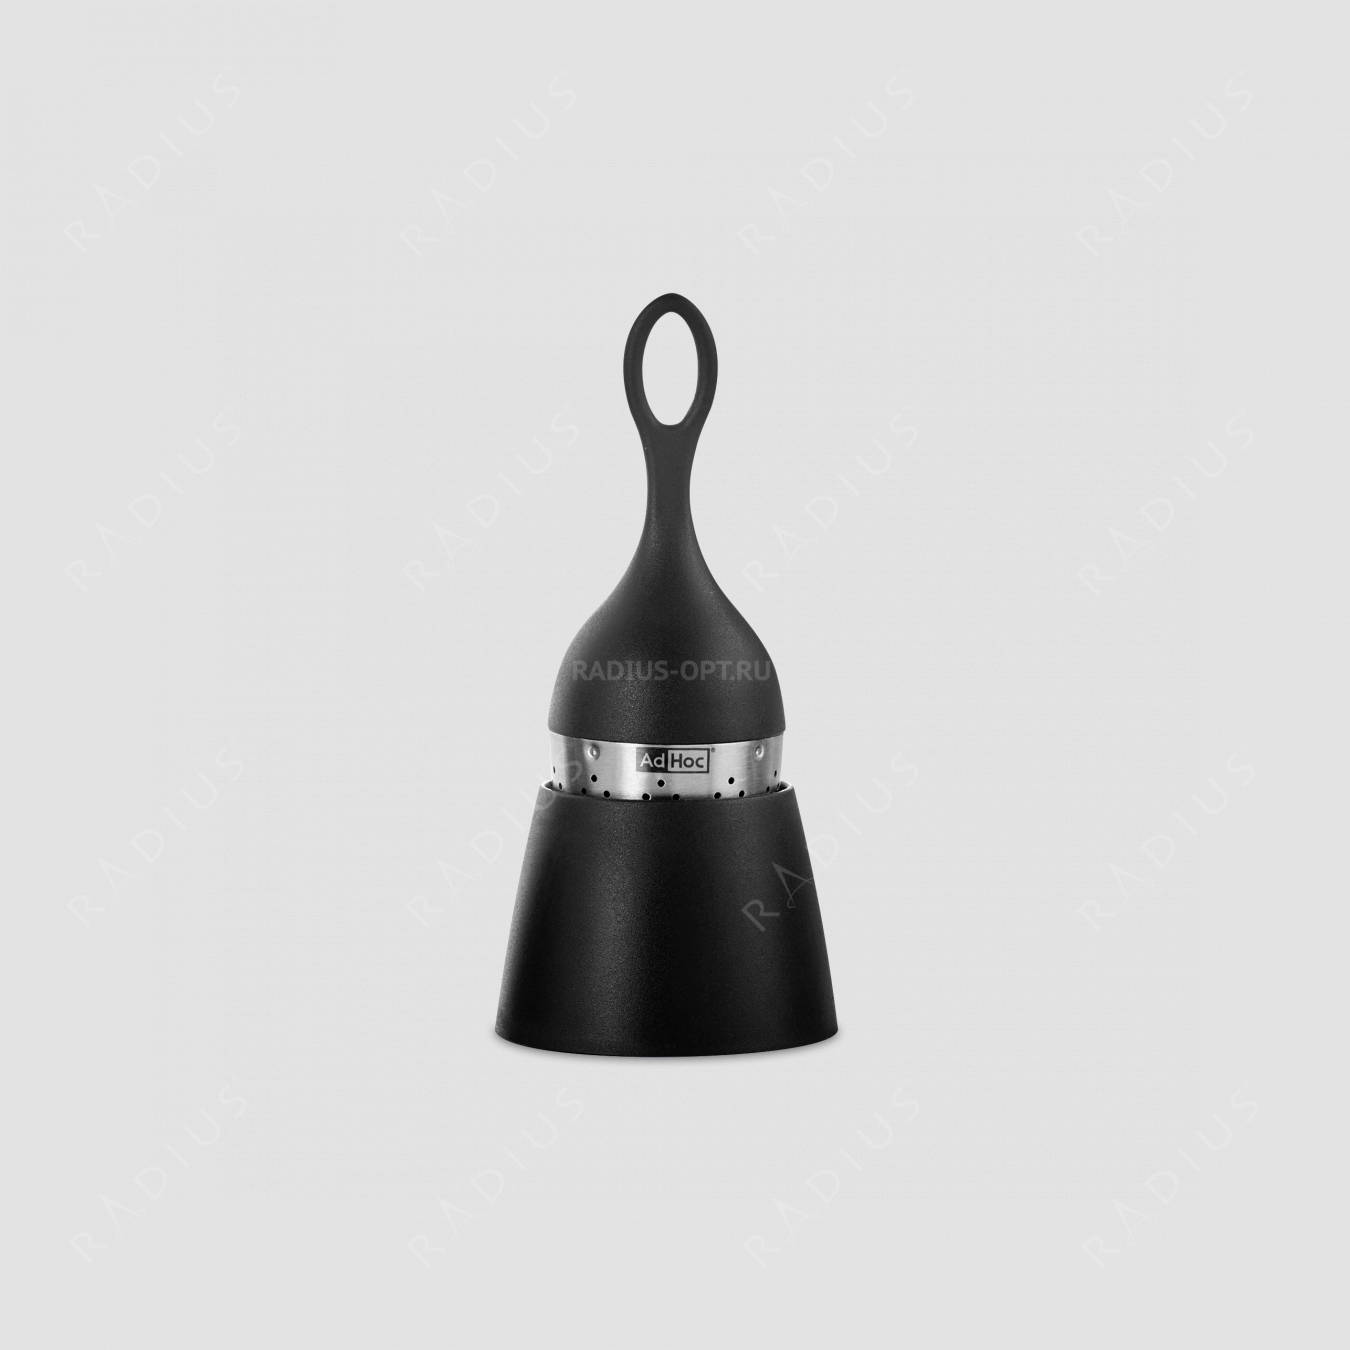 Ситечко для заваривания чая на подставке, FLOATEA, с черной ручкой, размер: 13 x 4 см, серия Floatea, ADHOC, Германия